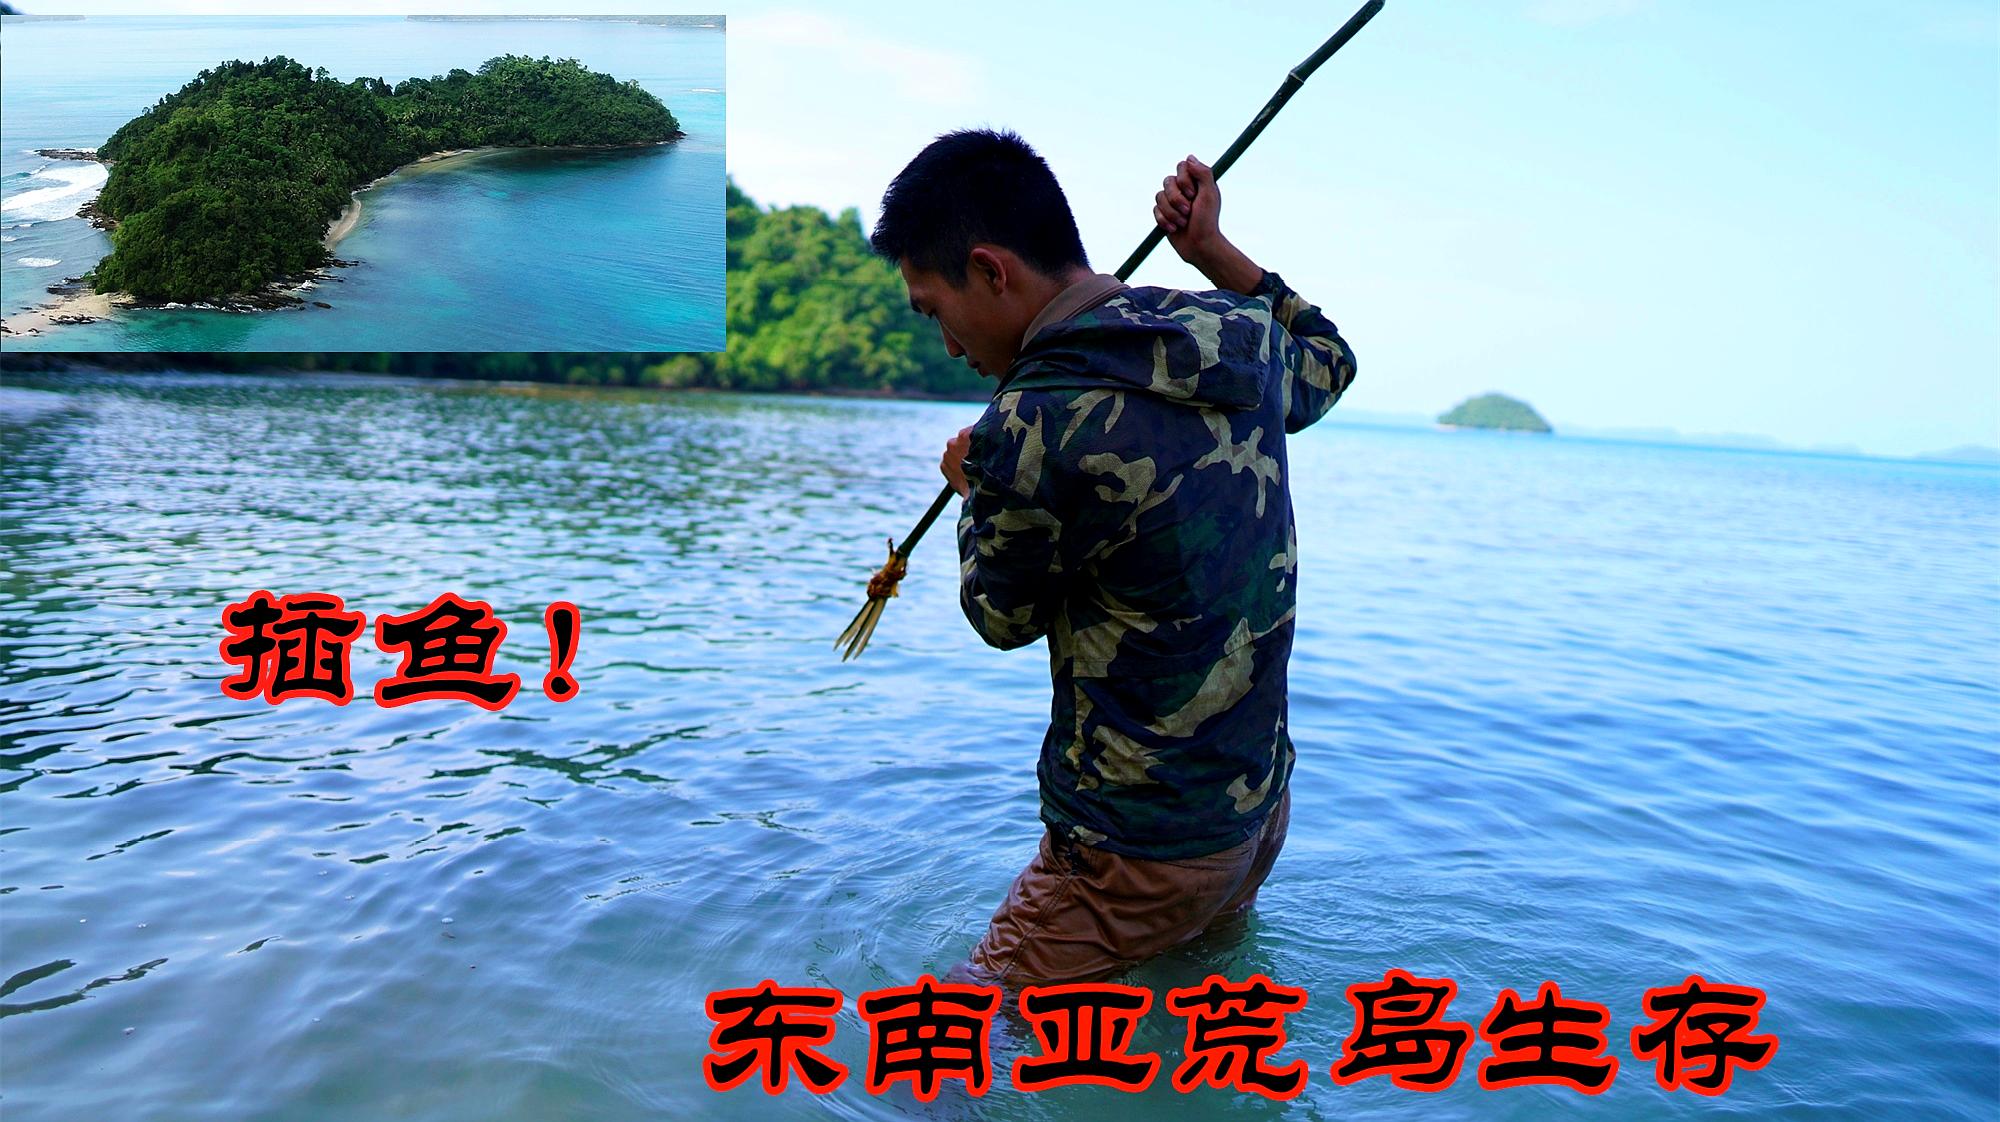 饥饿小伙东南亚荒岛生存10天为摆脱困境潜水插鱼